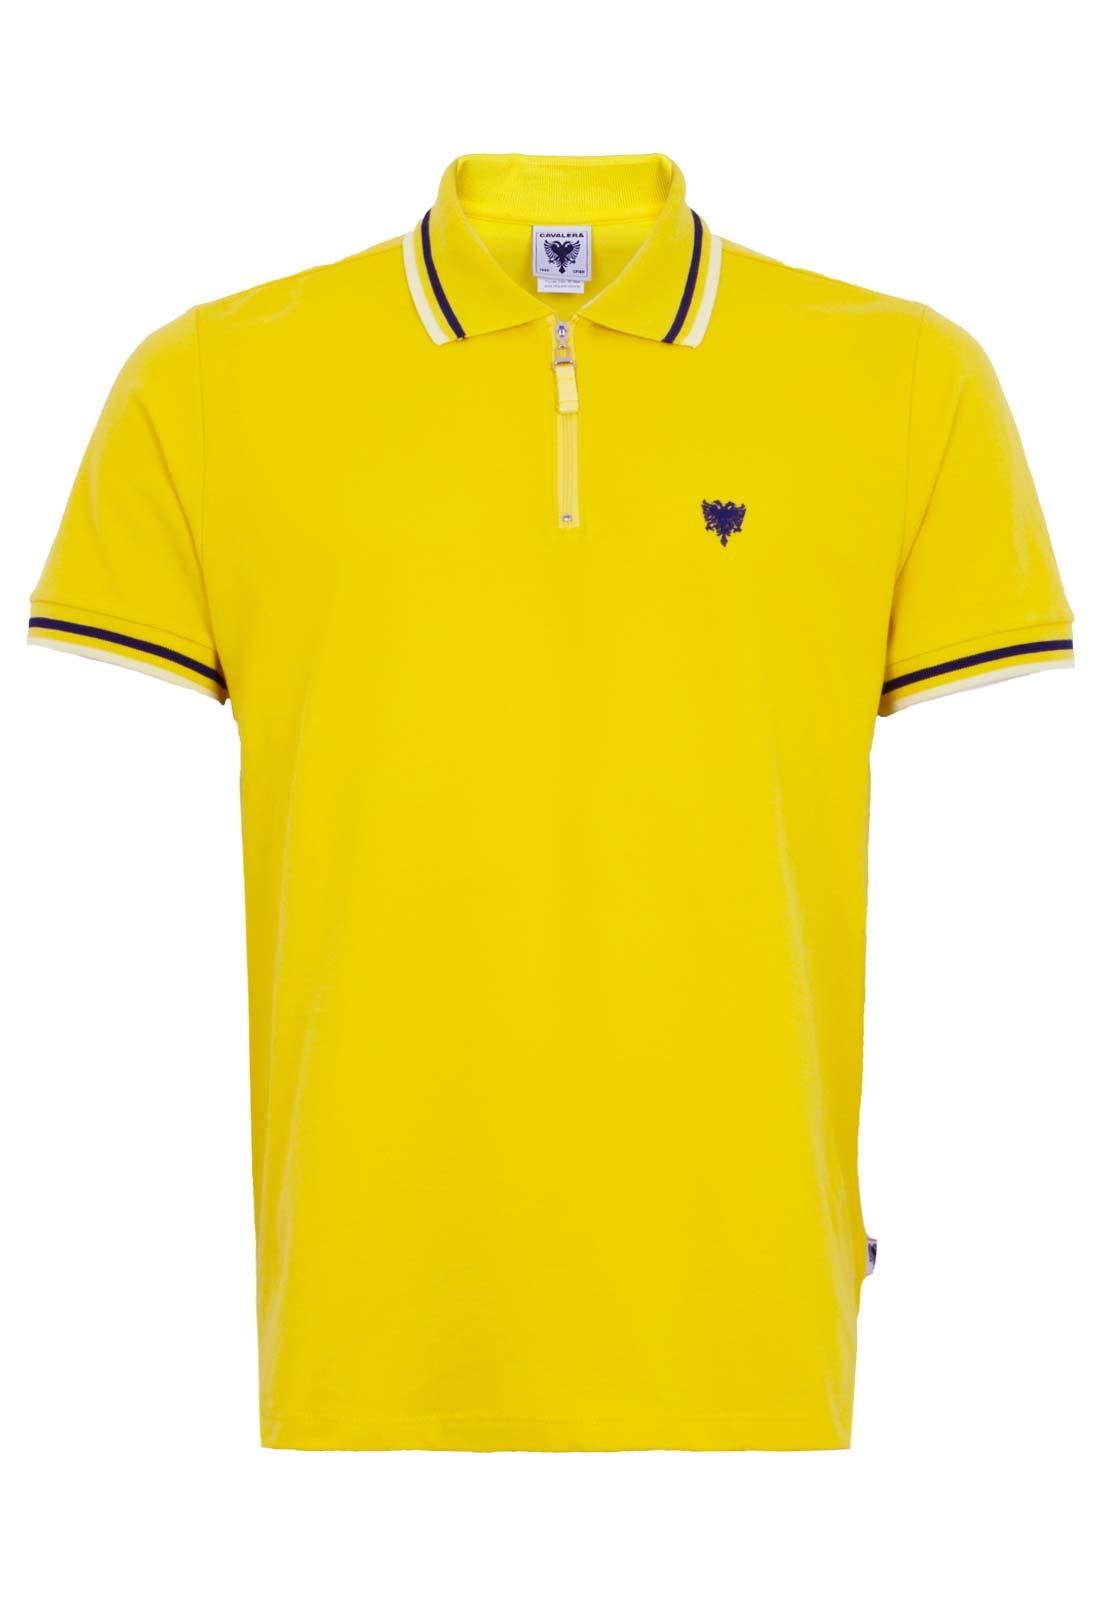 camisa polo amarela masculina